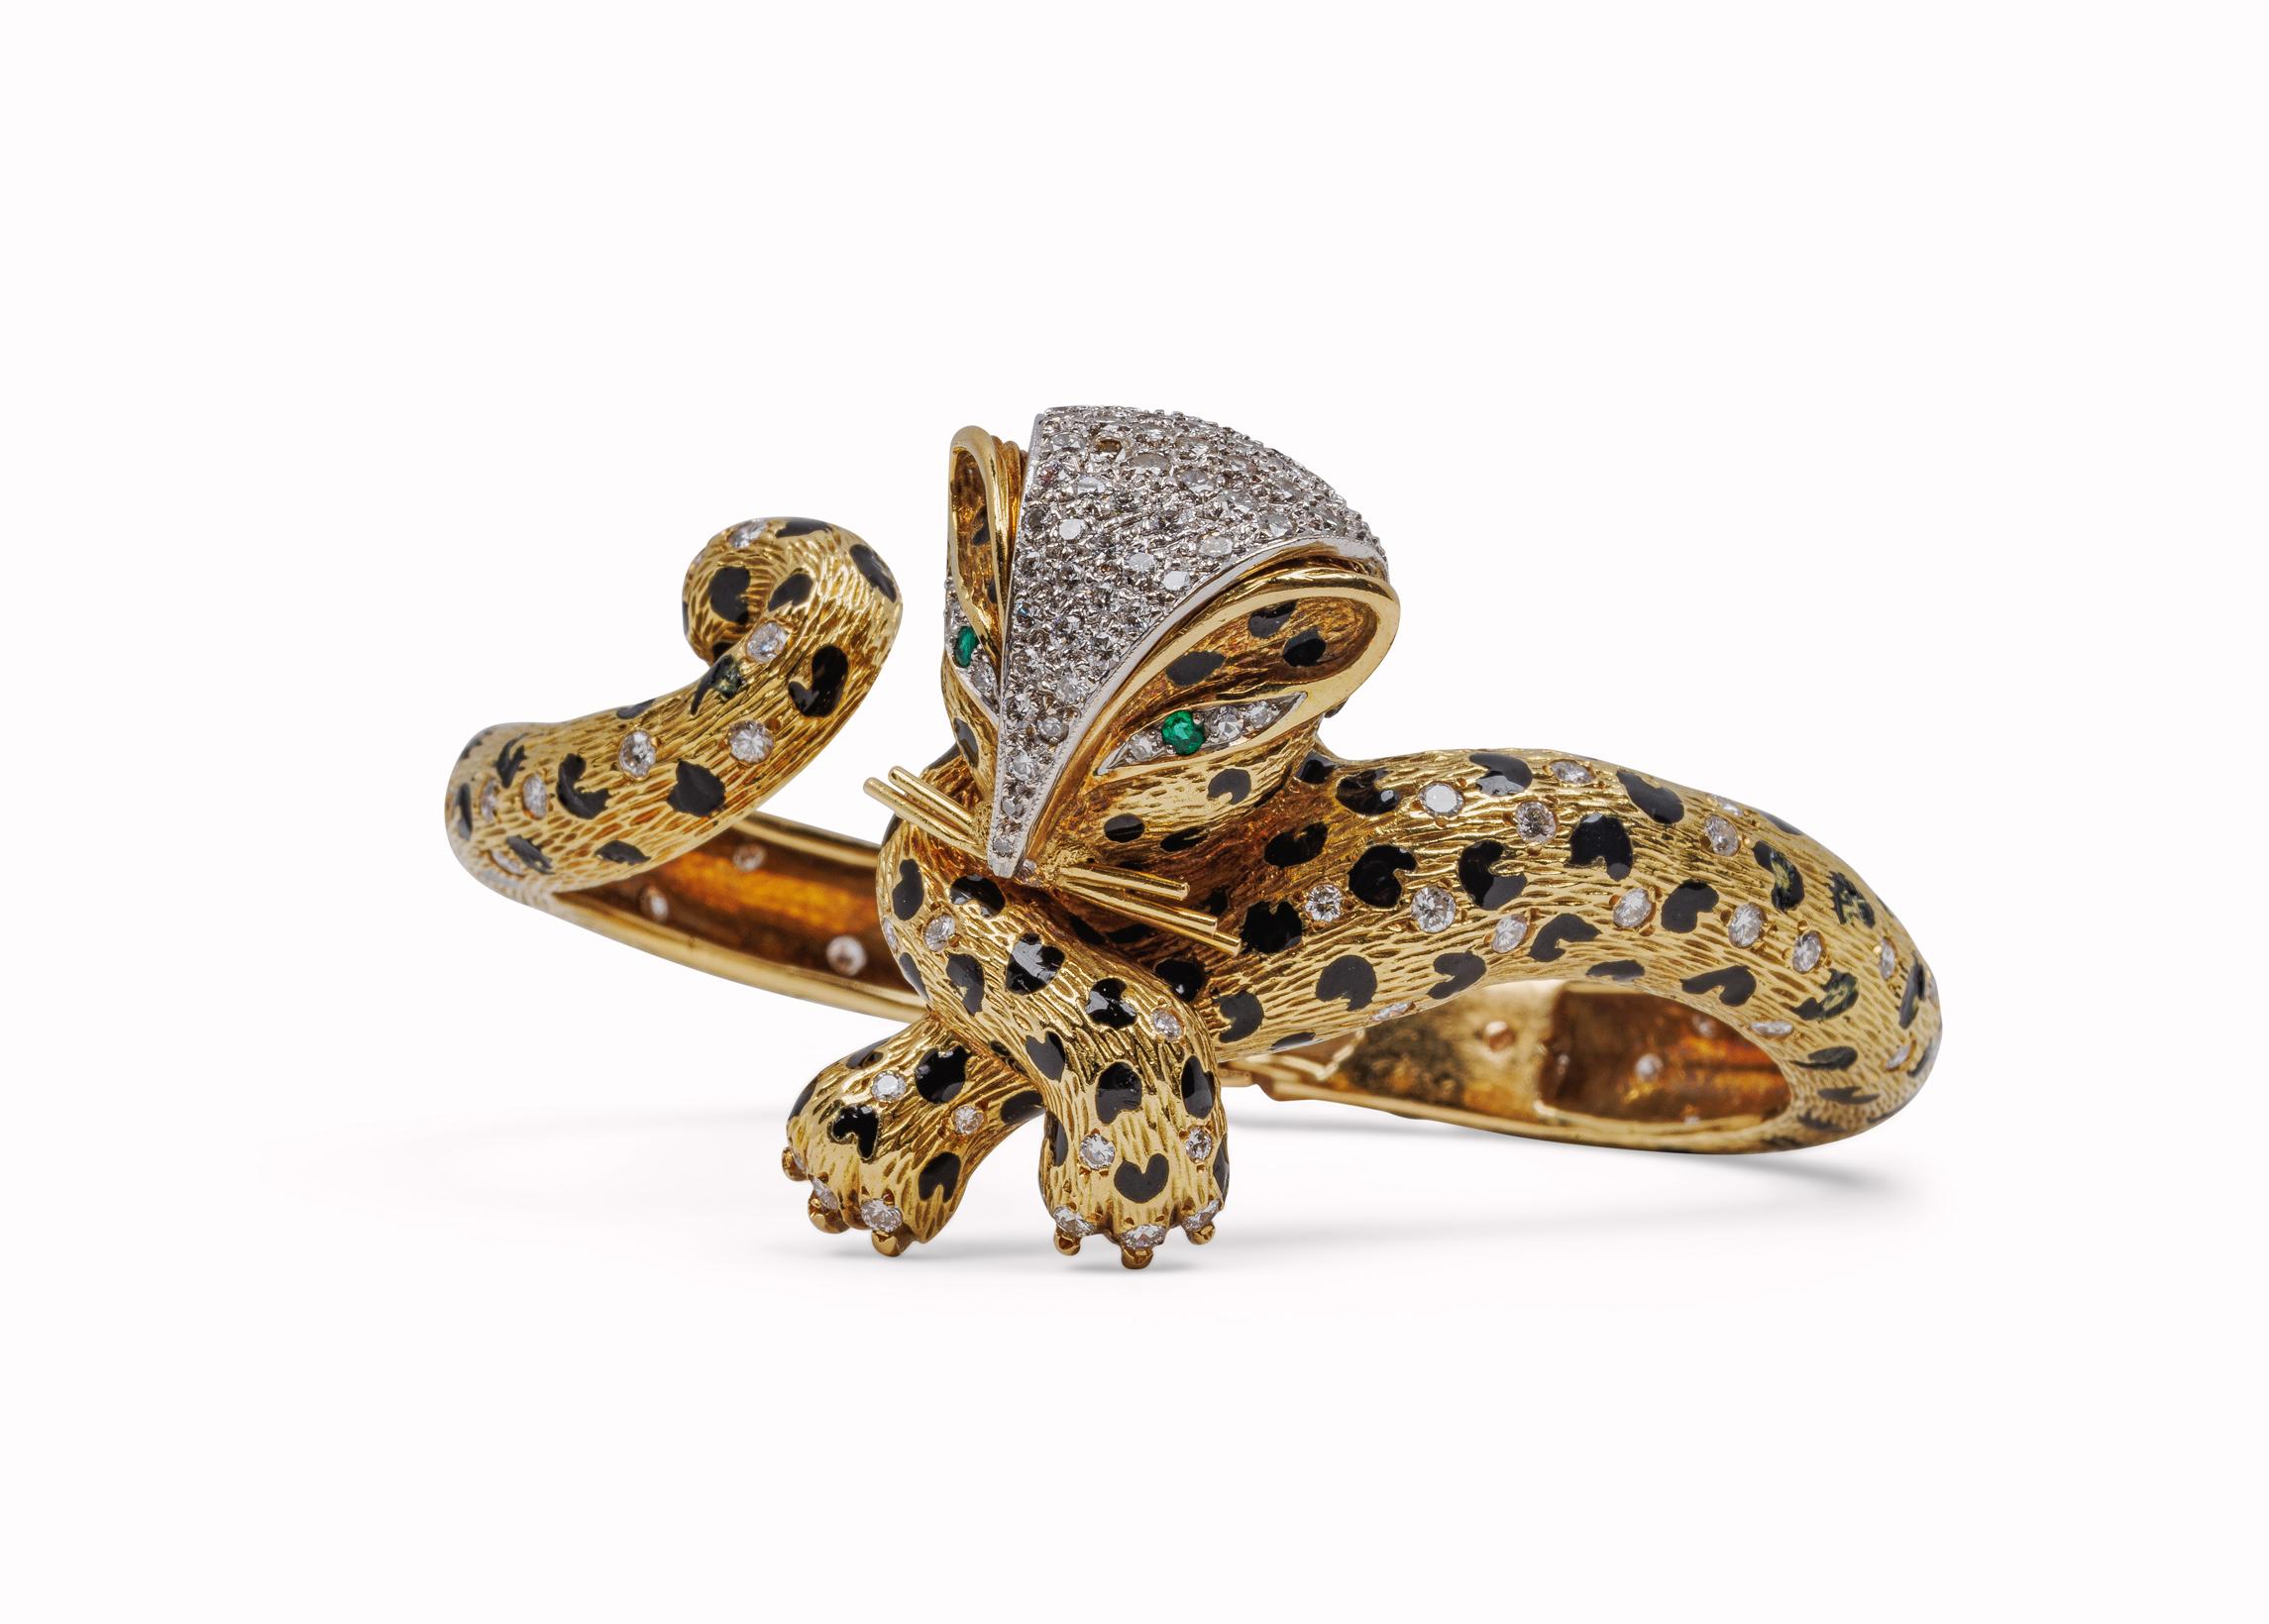 Leoparden-Armreif aus 18 Karat Gelbgold mit Smaragden und Diamanten von Fred Paris

143 runde Diamanten 5,14 Karat Diamanten  